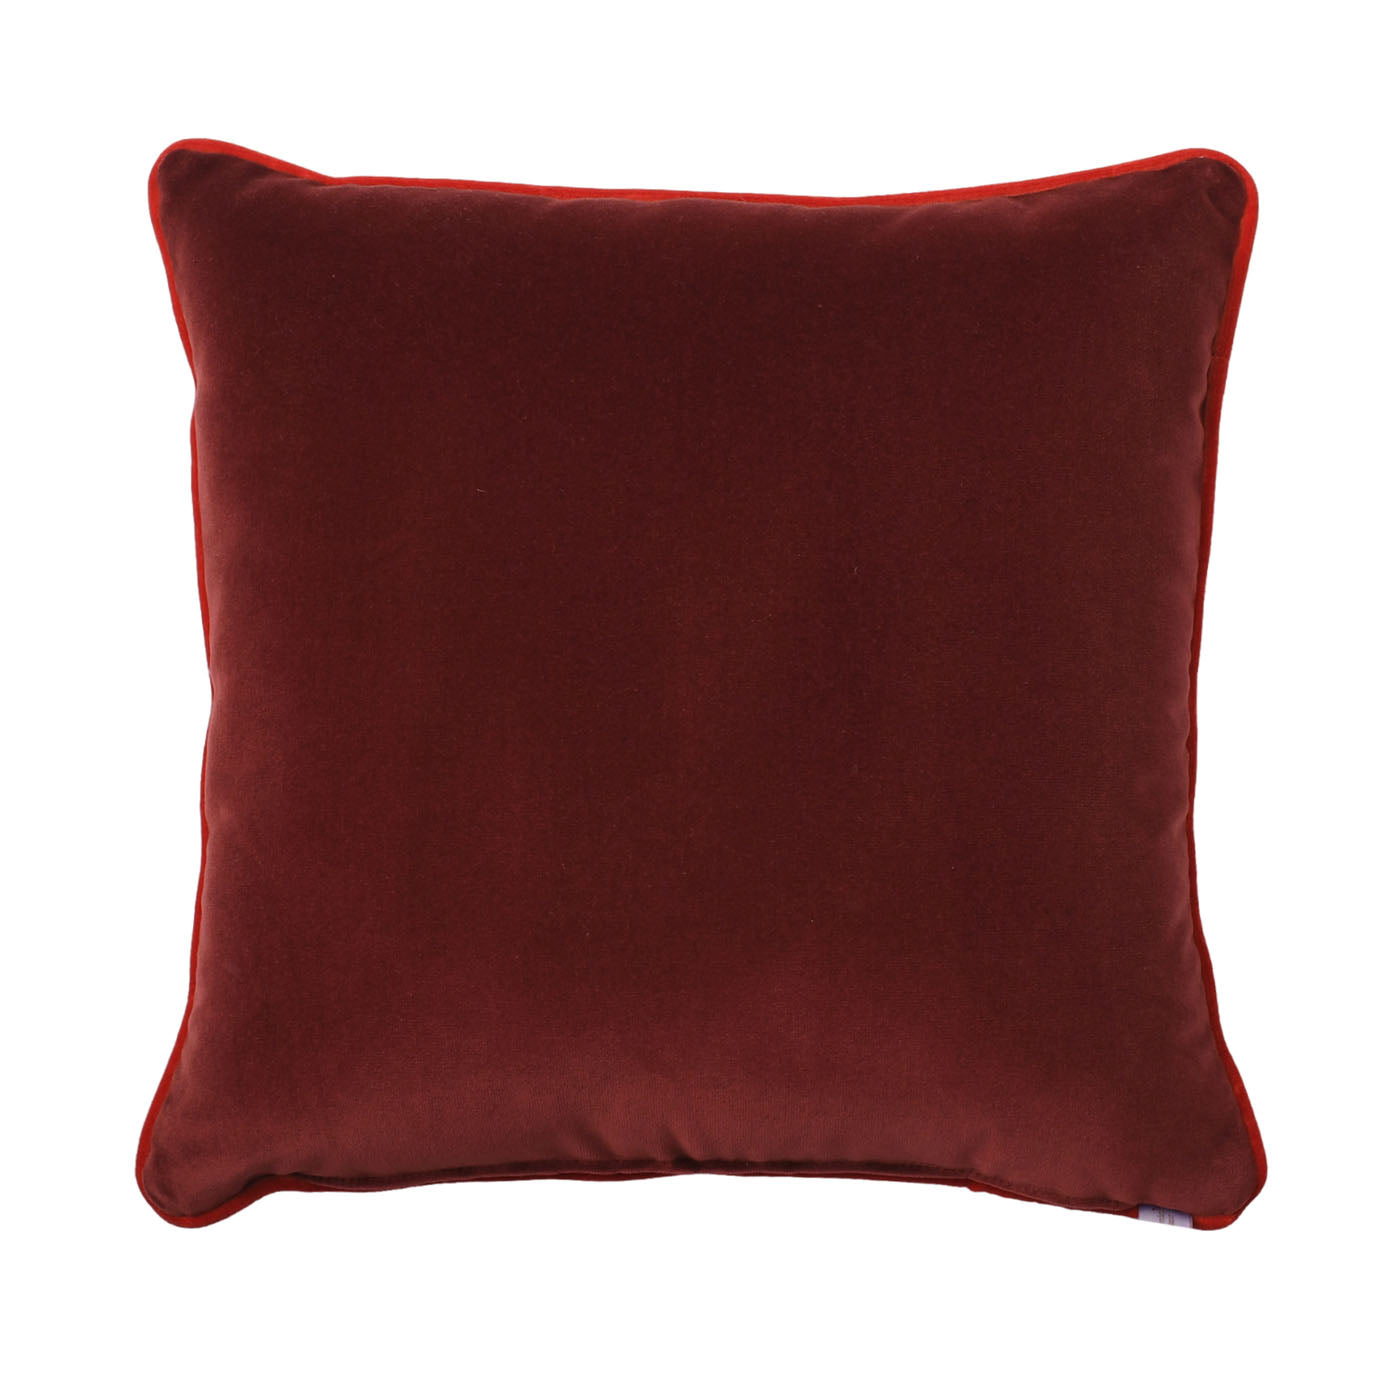 Carrè Cushion in geometric Relief Jacquard Fabric #2 - Alternative view 1